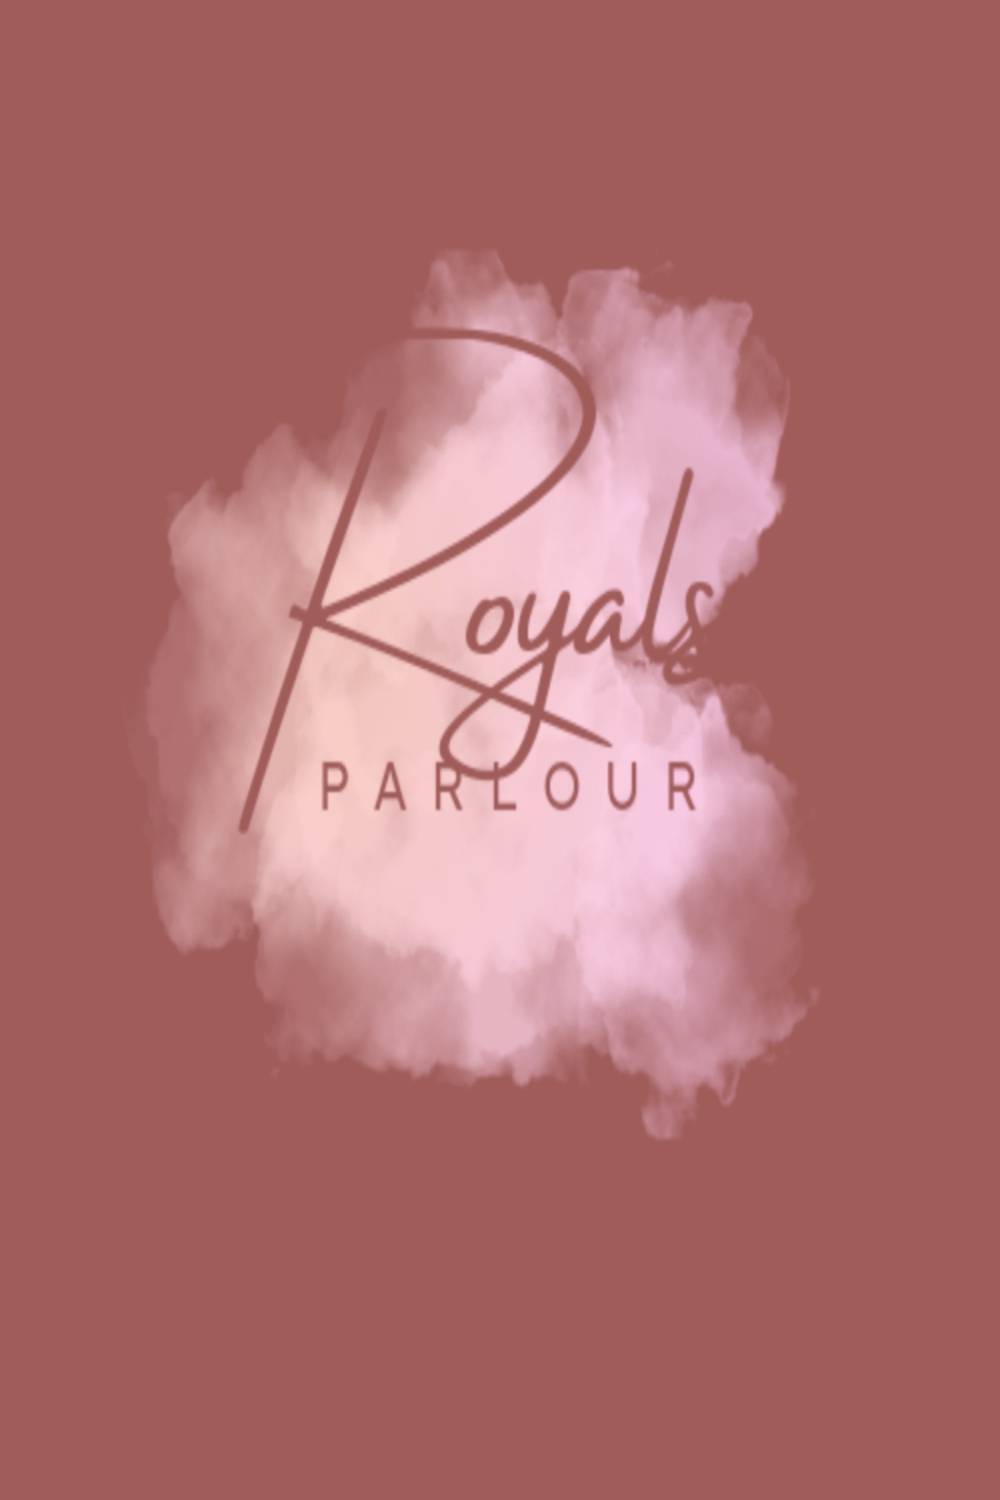 Royals Parlour pinterest preview image.